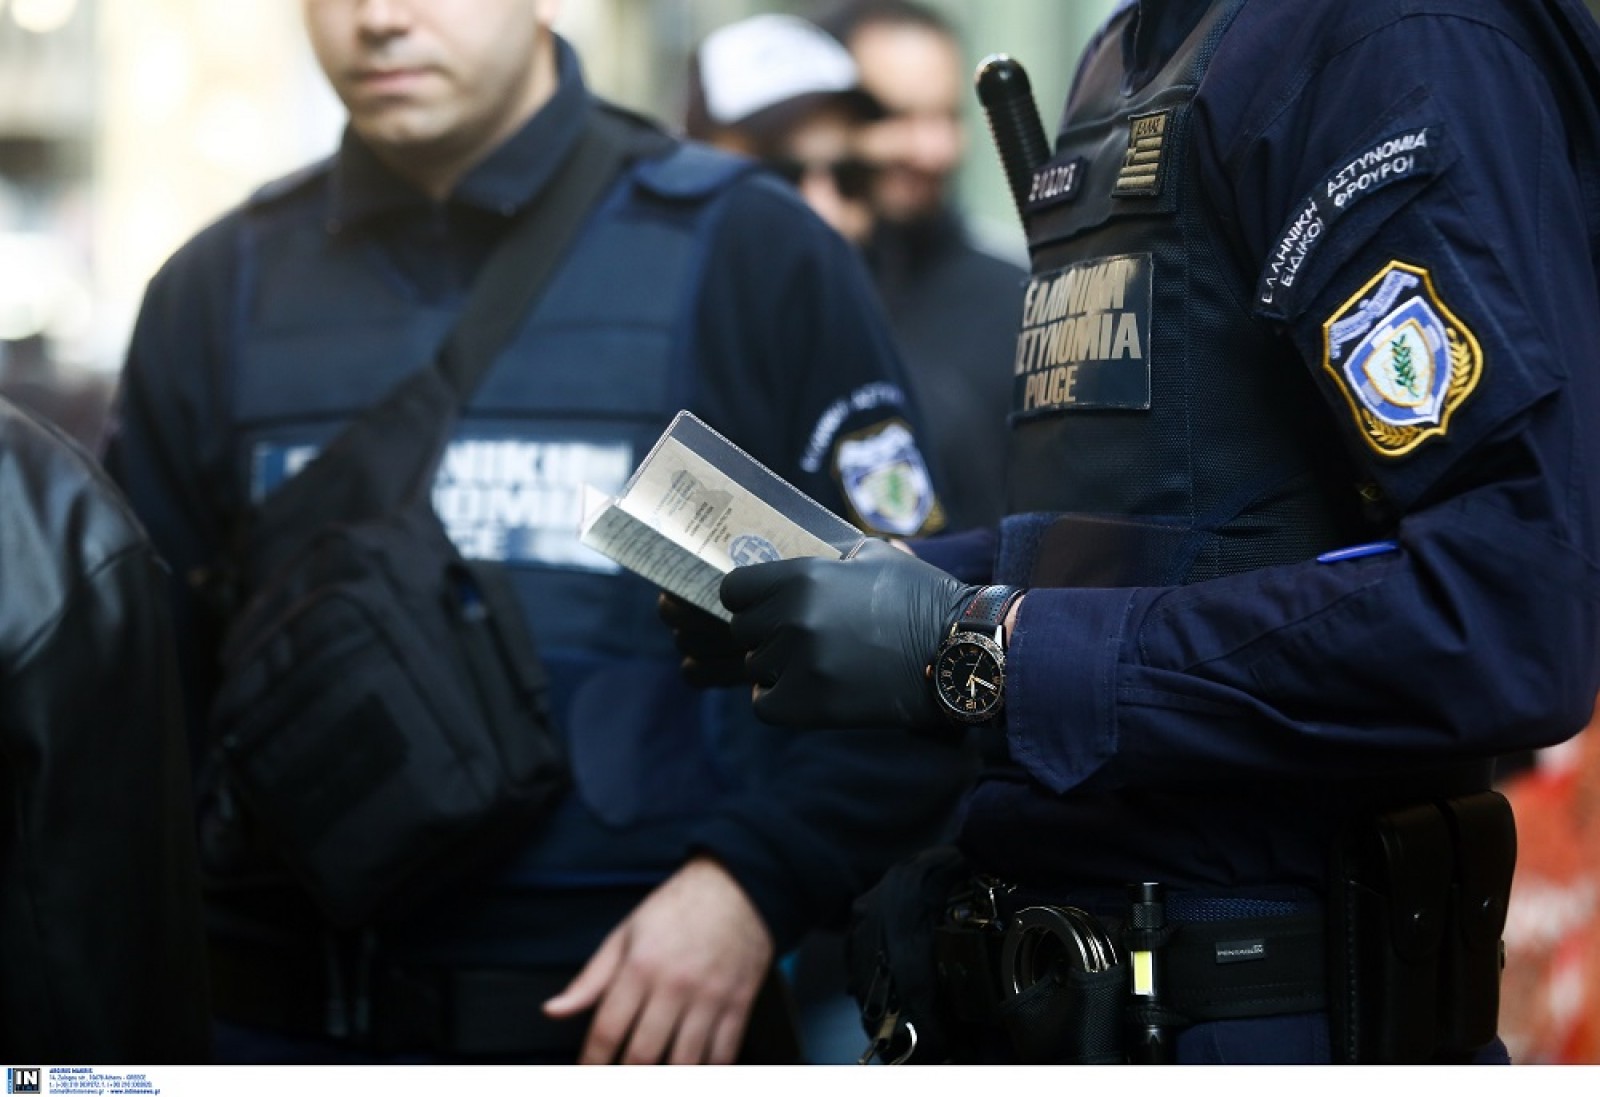 Έβρος: Συνελήφθη Τούρκους που προκάλεσε τροχαίο στην Πολωνία με 3 νεκρούς και 1 τραυματία